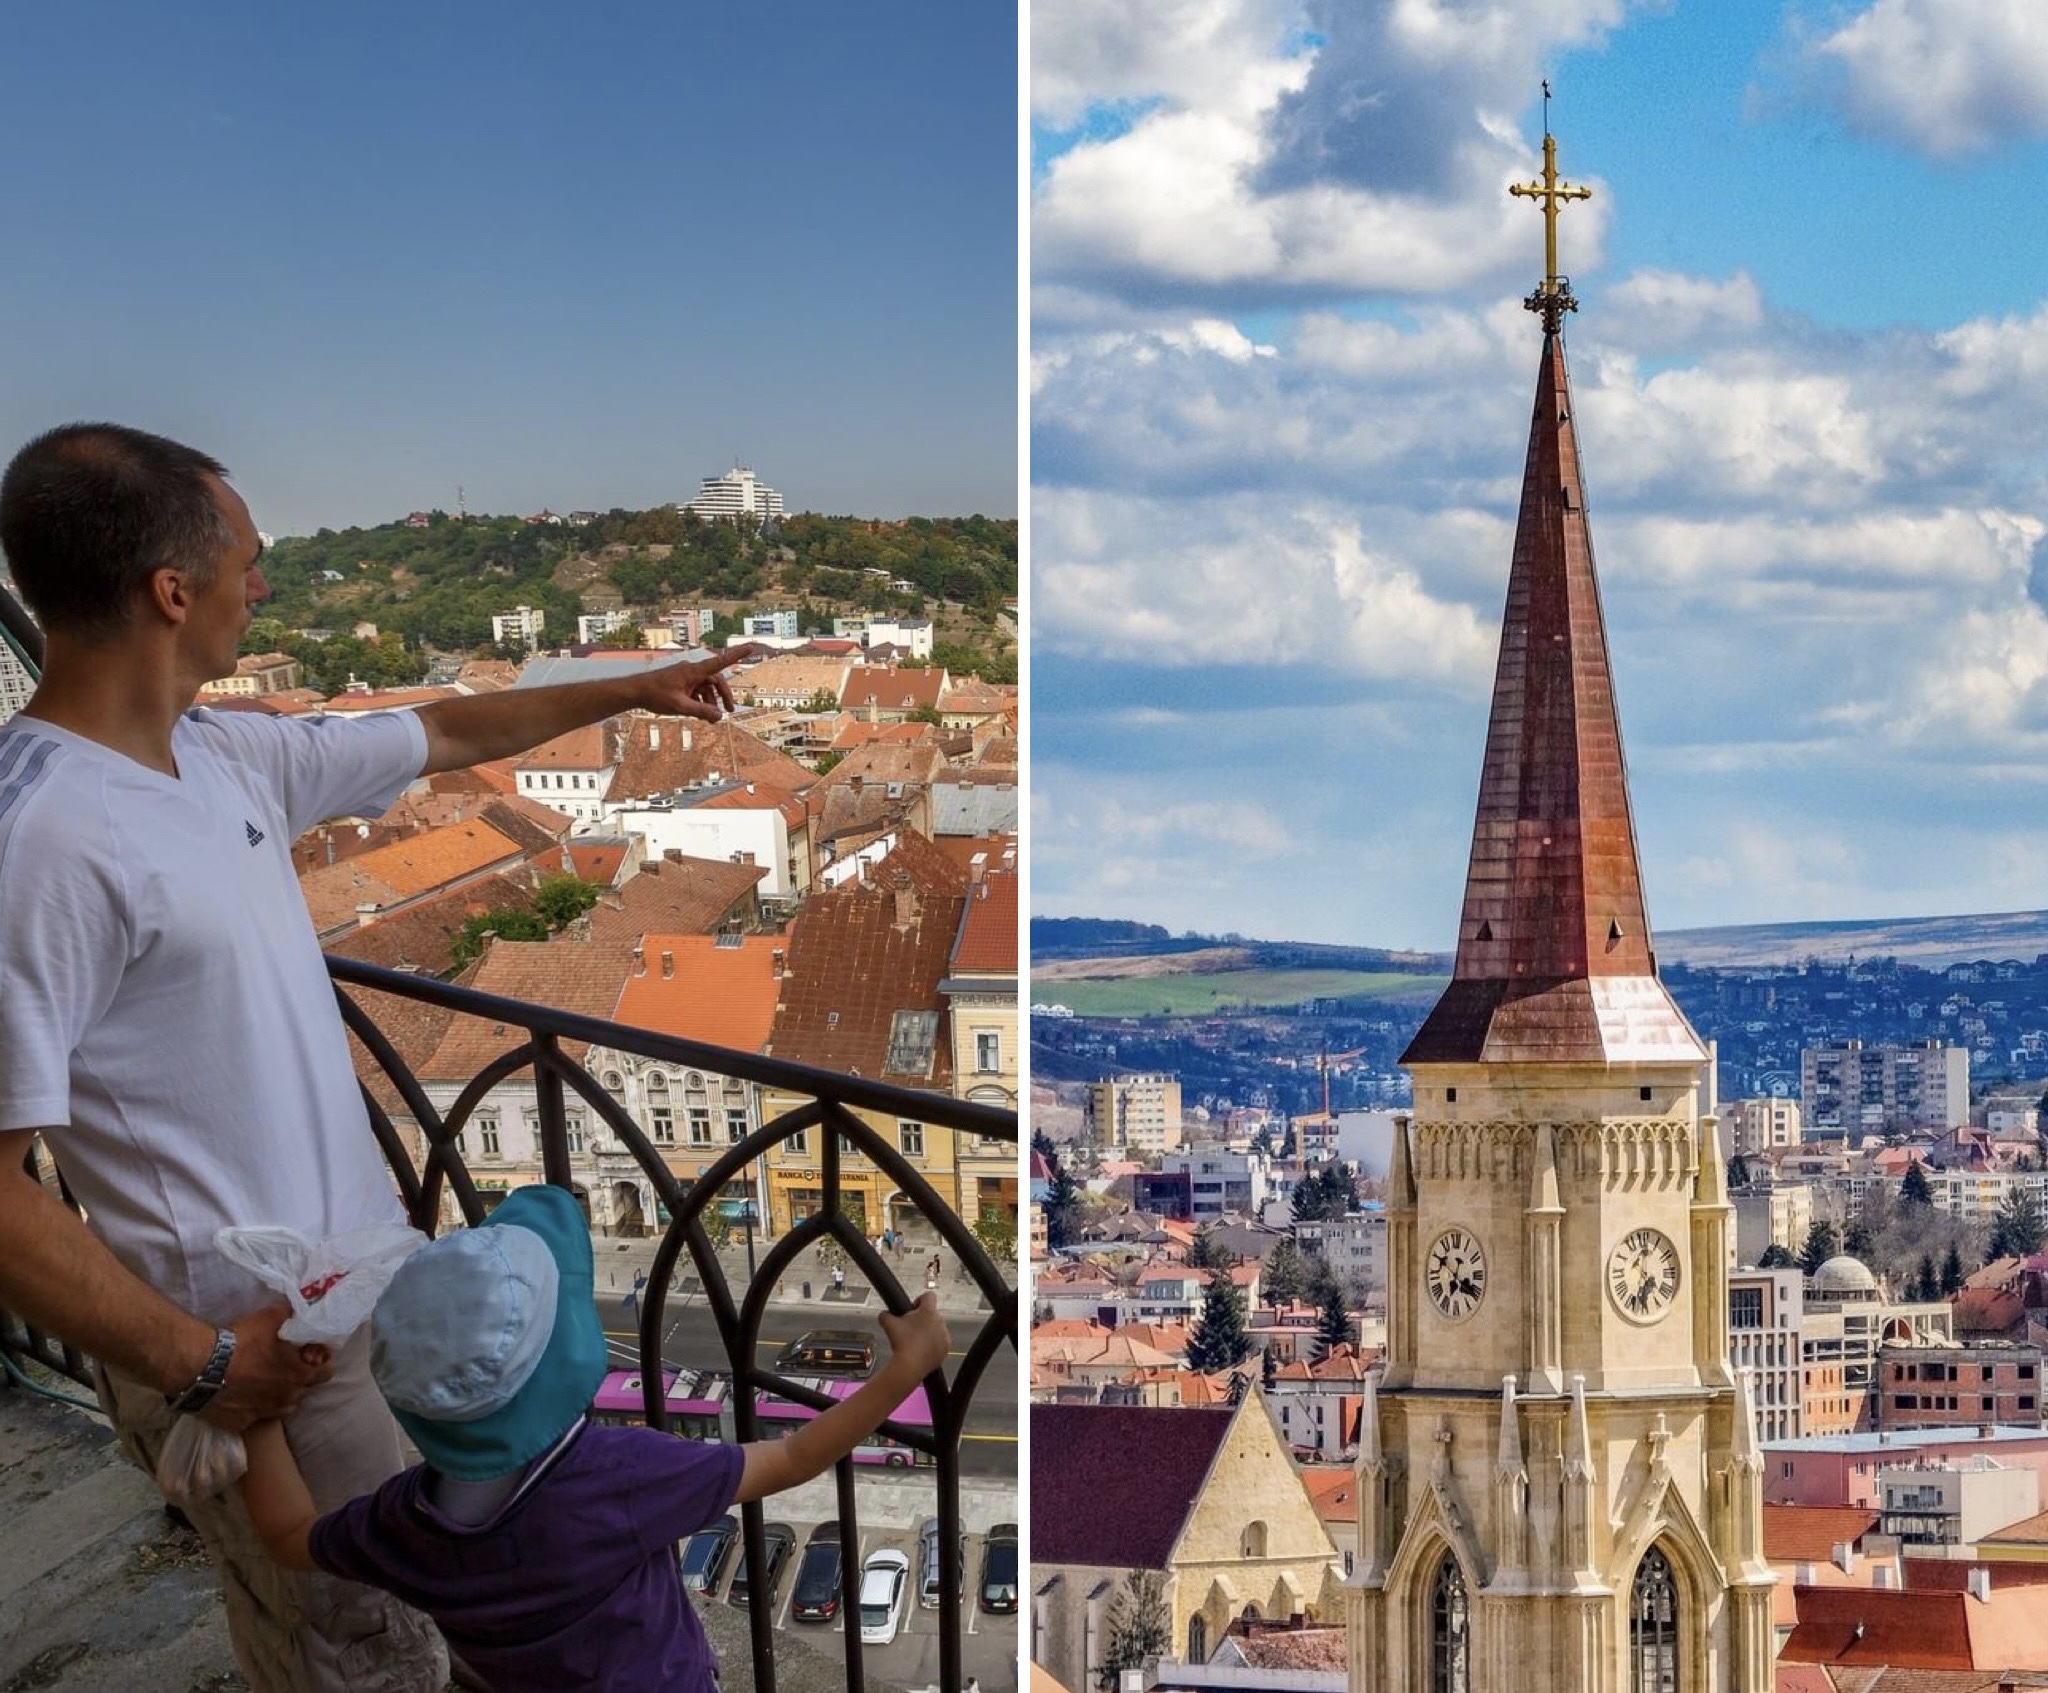 Clujenii vor putea vizita turnul Bisericii din Piața Unirii pe baza unei înregistrări.